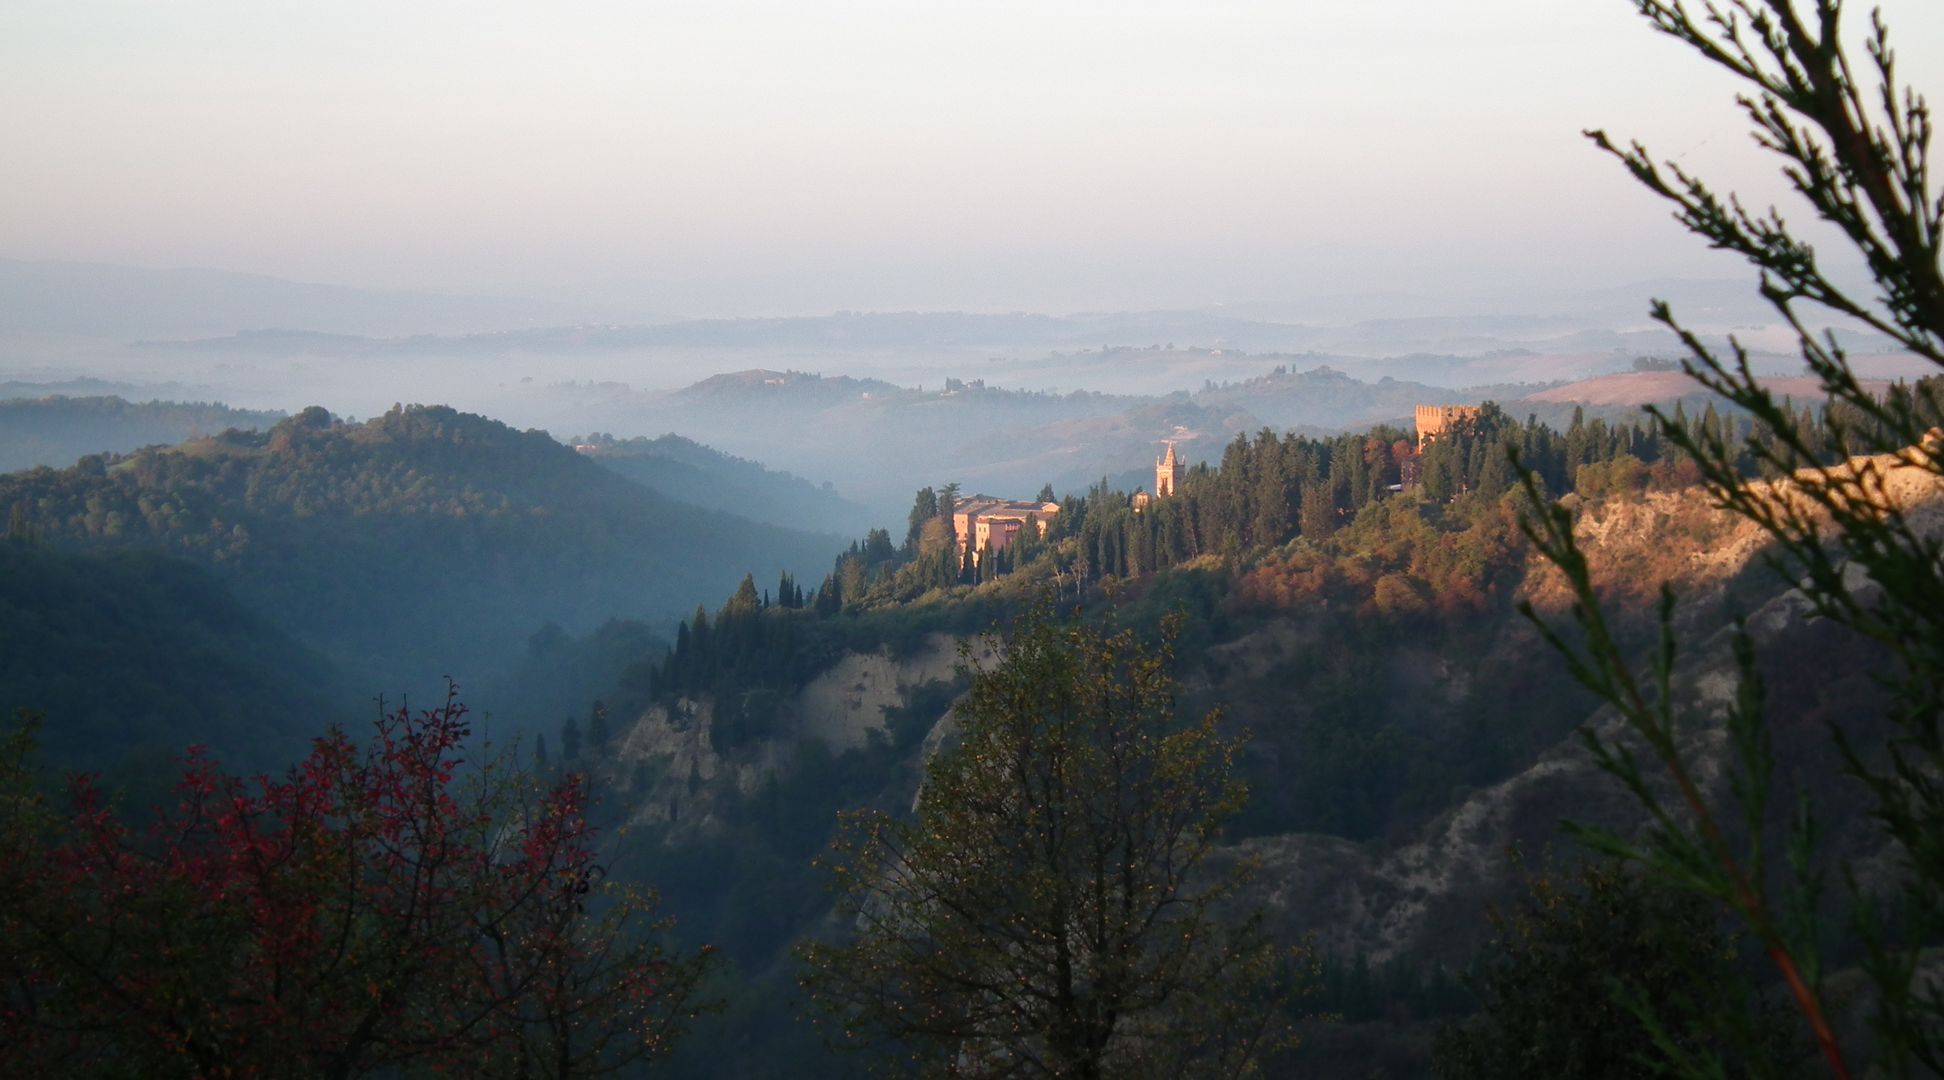 Vue de l'Abbaye de Monte Oliveto, en Toscane, Italie. Dans un paysage toscan baigné de brume, l'archiabbaye surgit des cyprès.